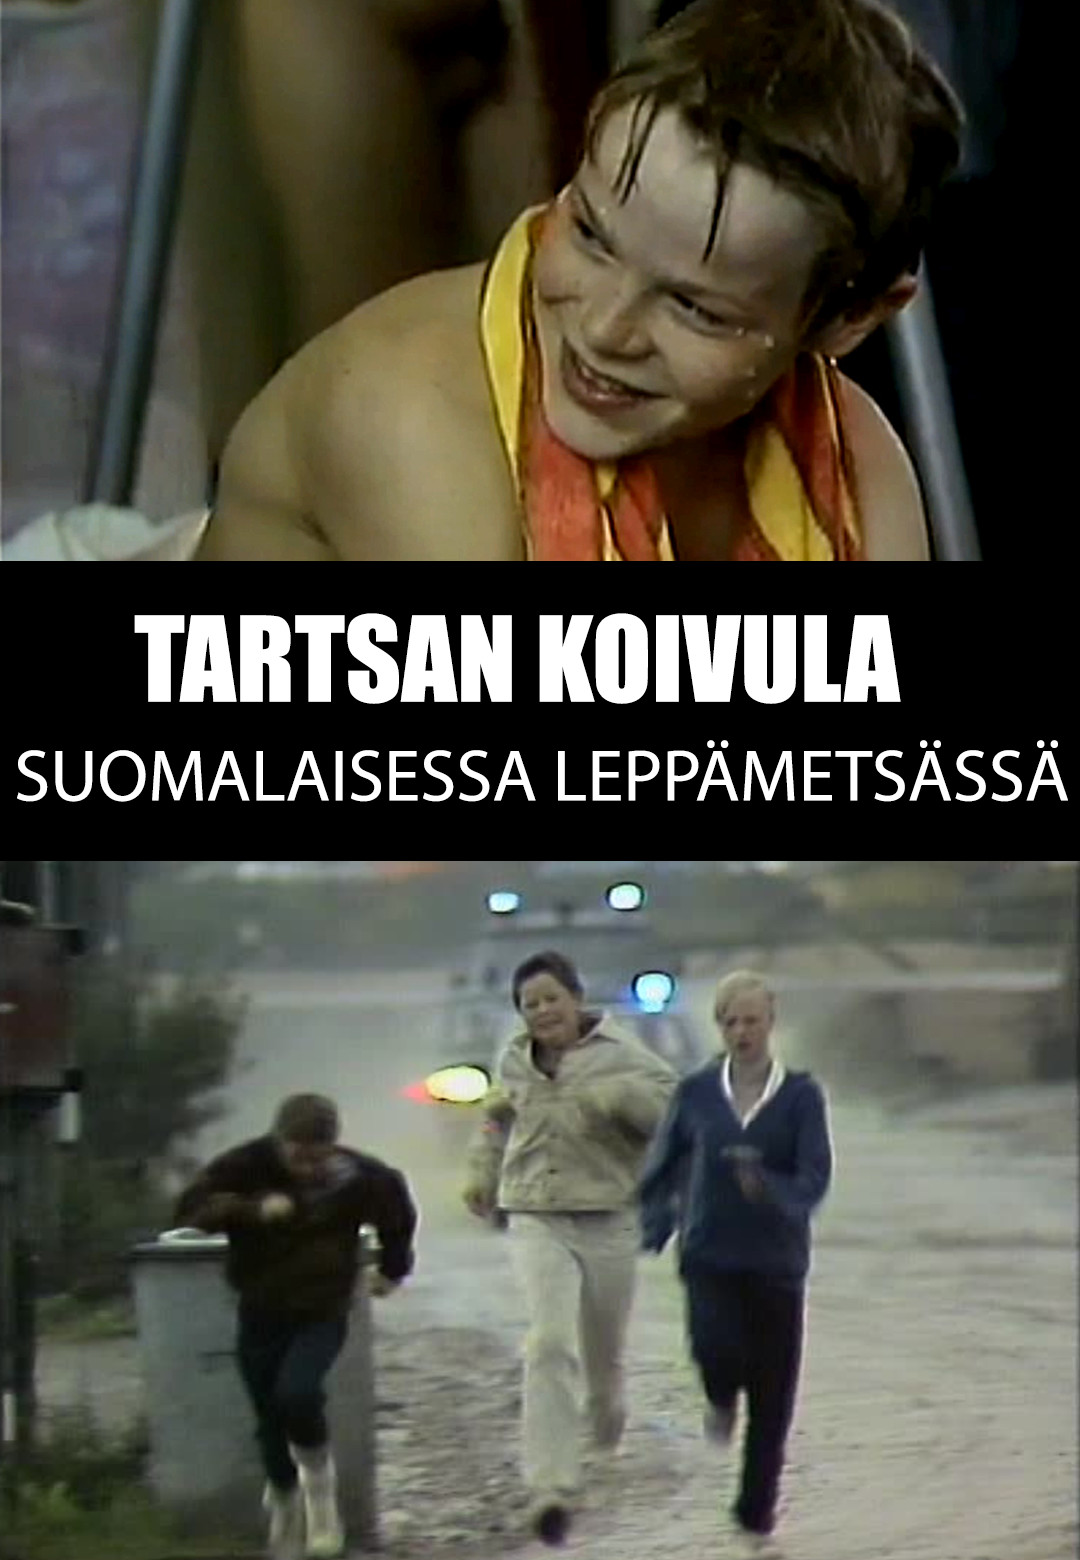 Tartsan Koivula suomalaisessa leppämetsässä (1980) Screenshot 1